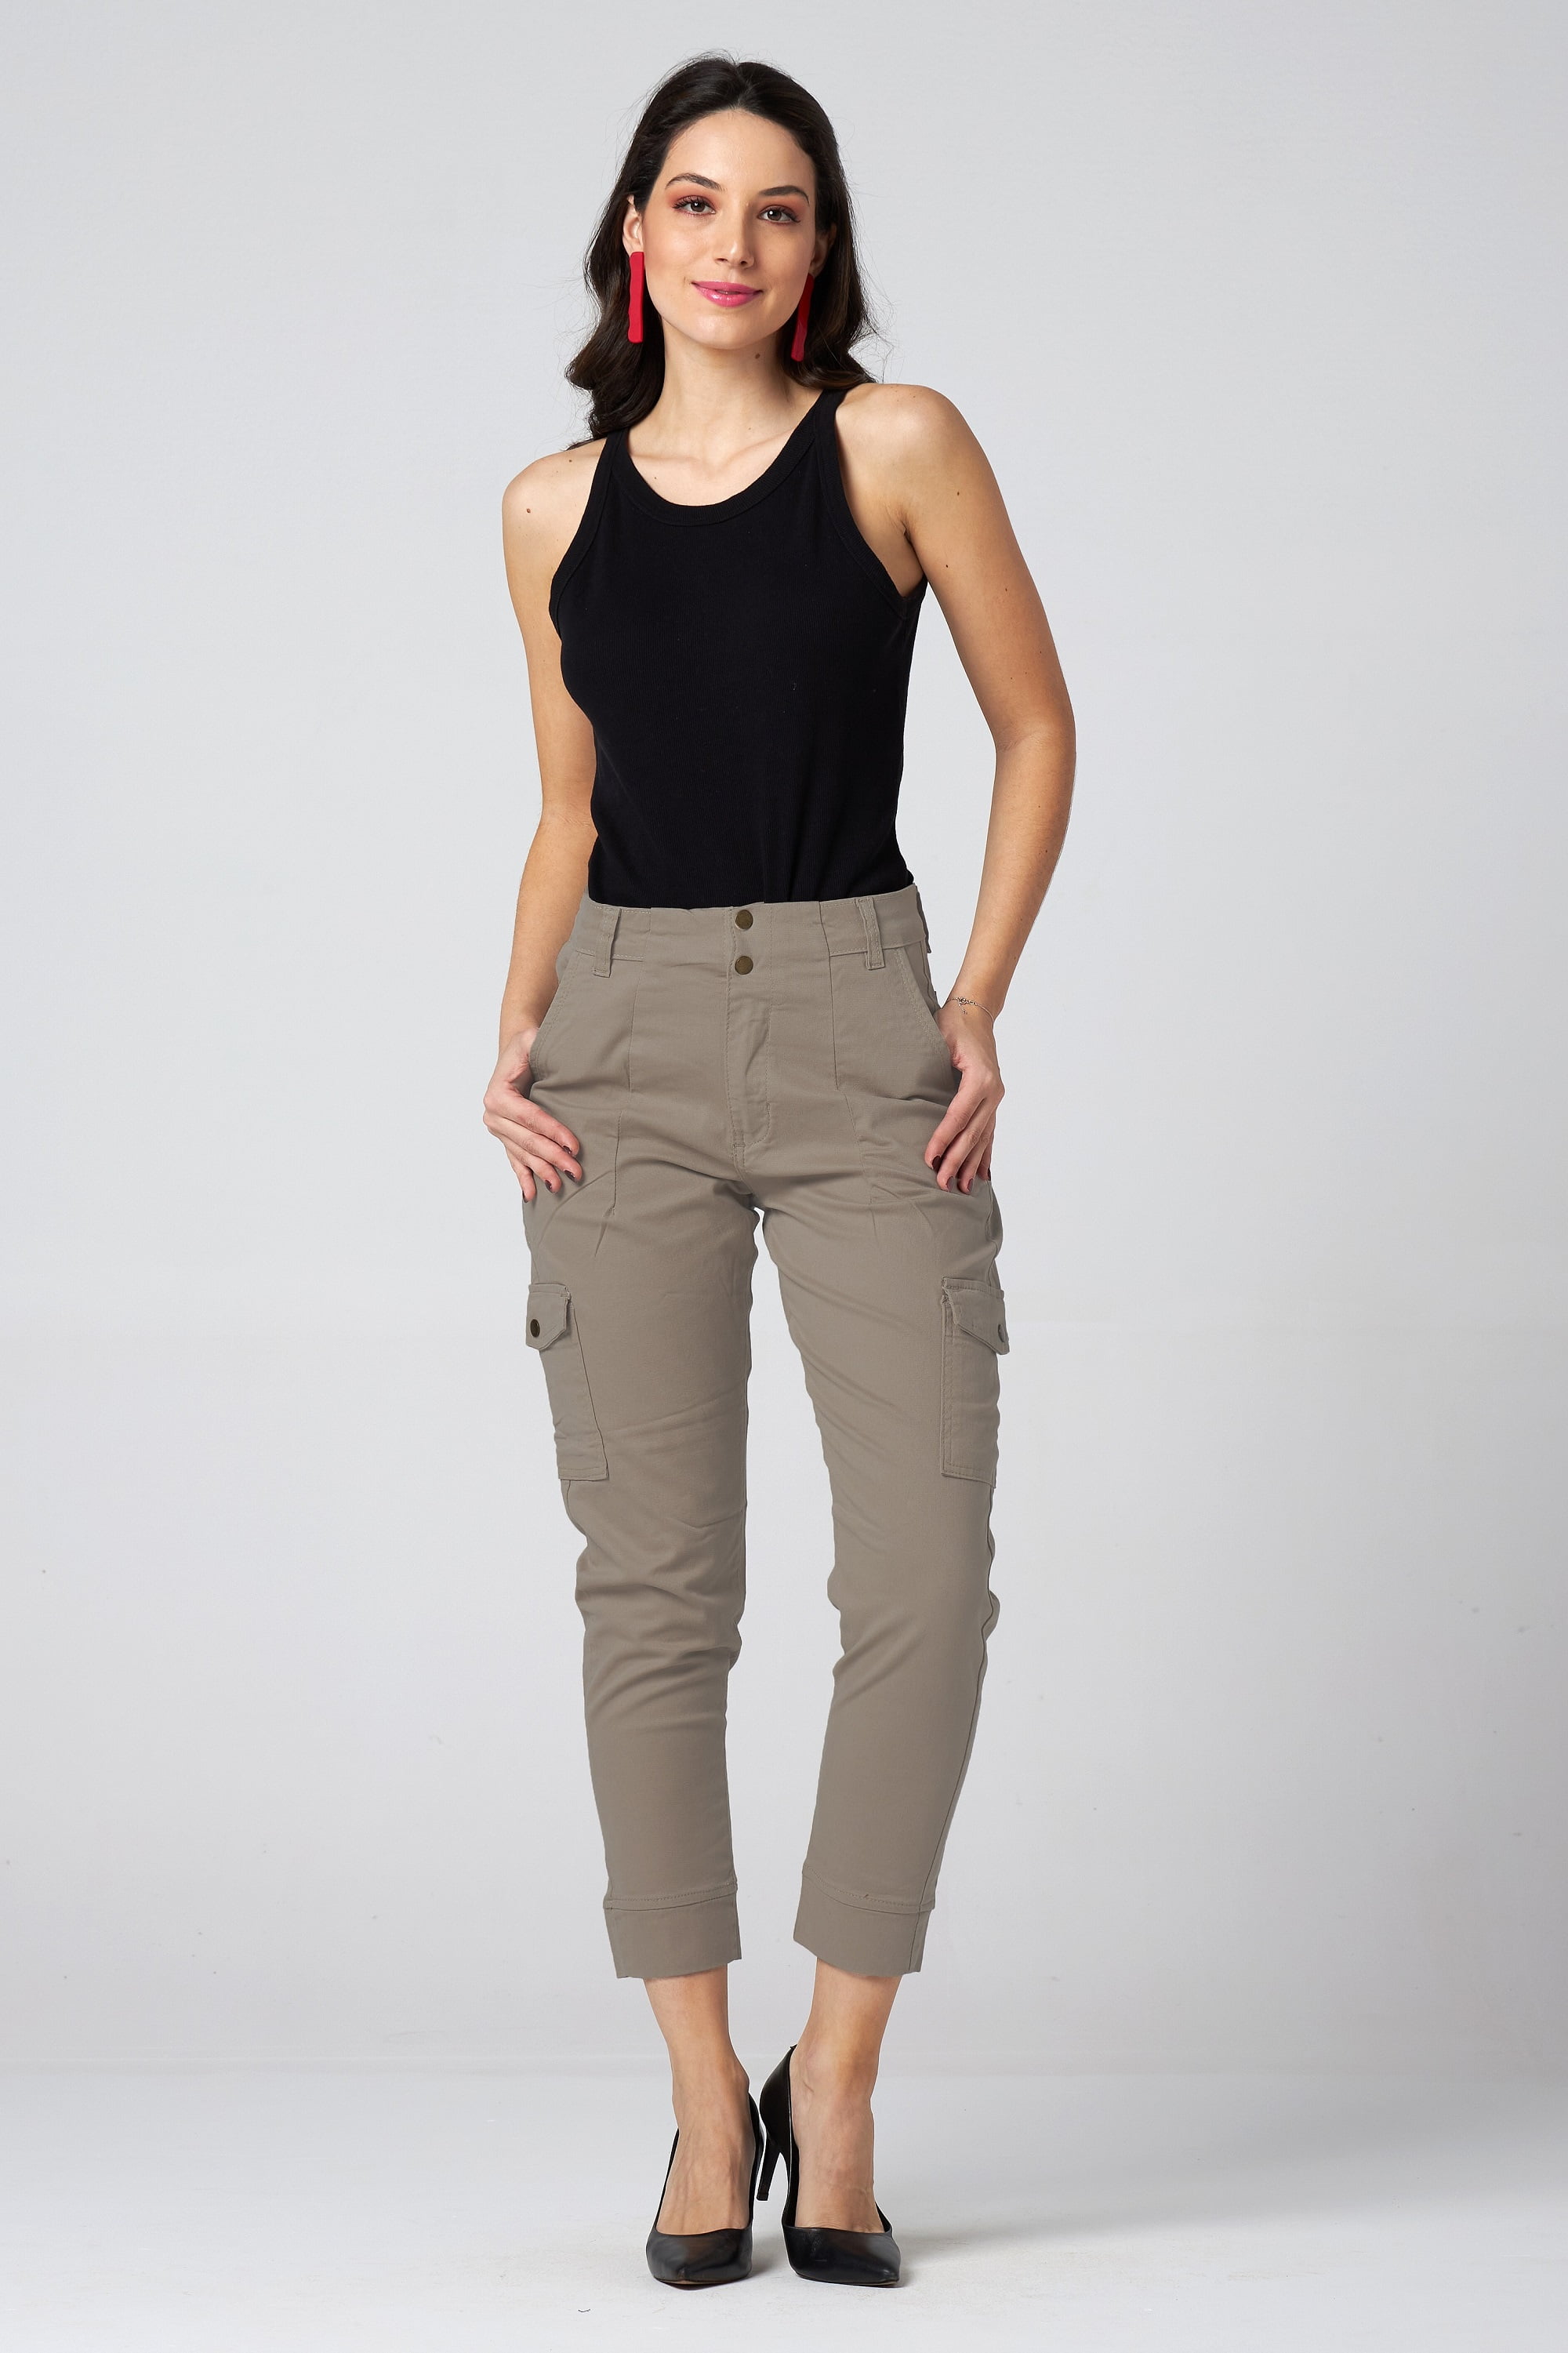 Calça Cargo Caqui Feminina na Oxiblue Jeans